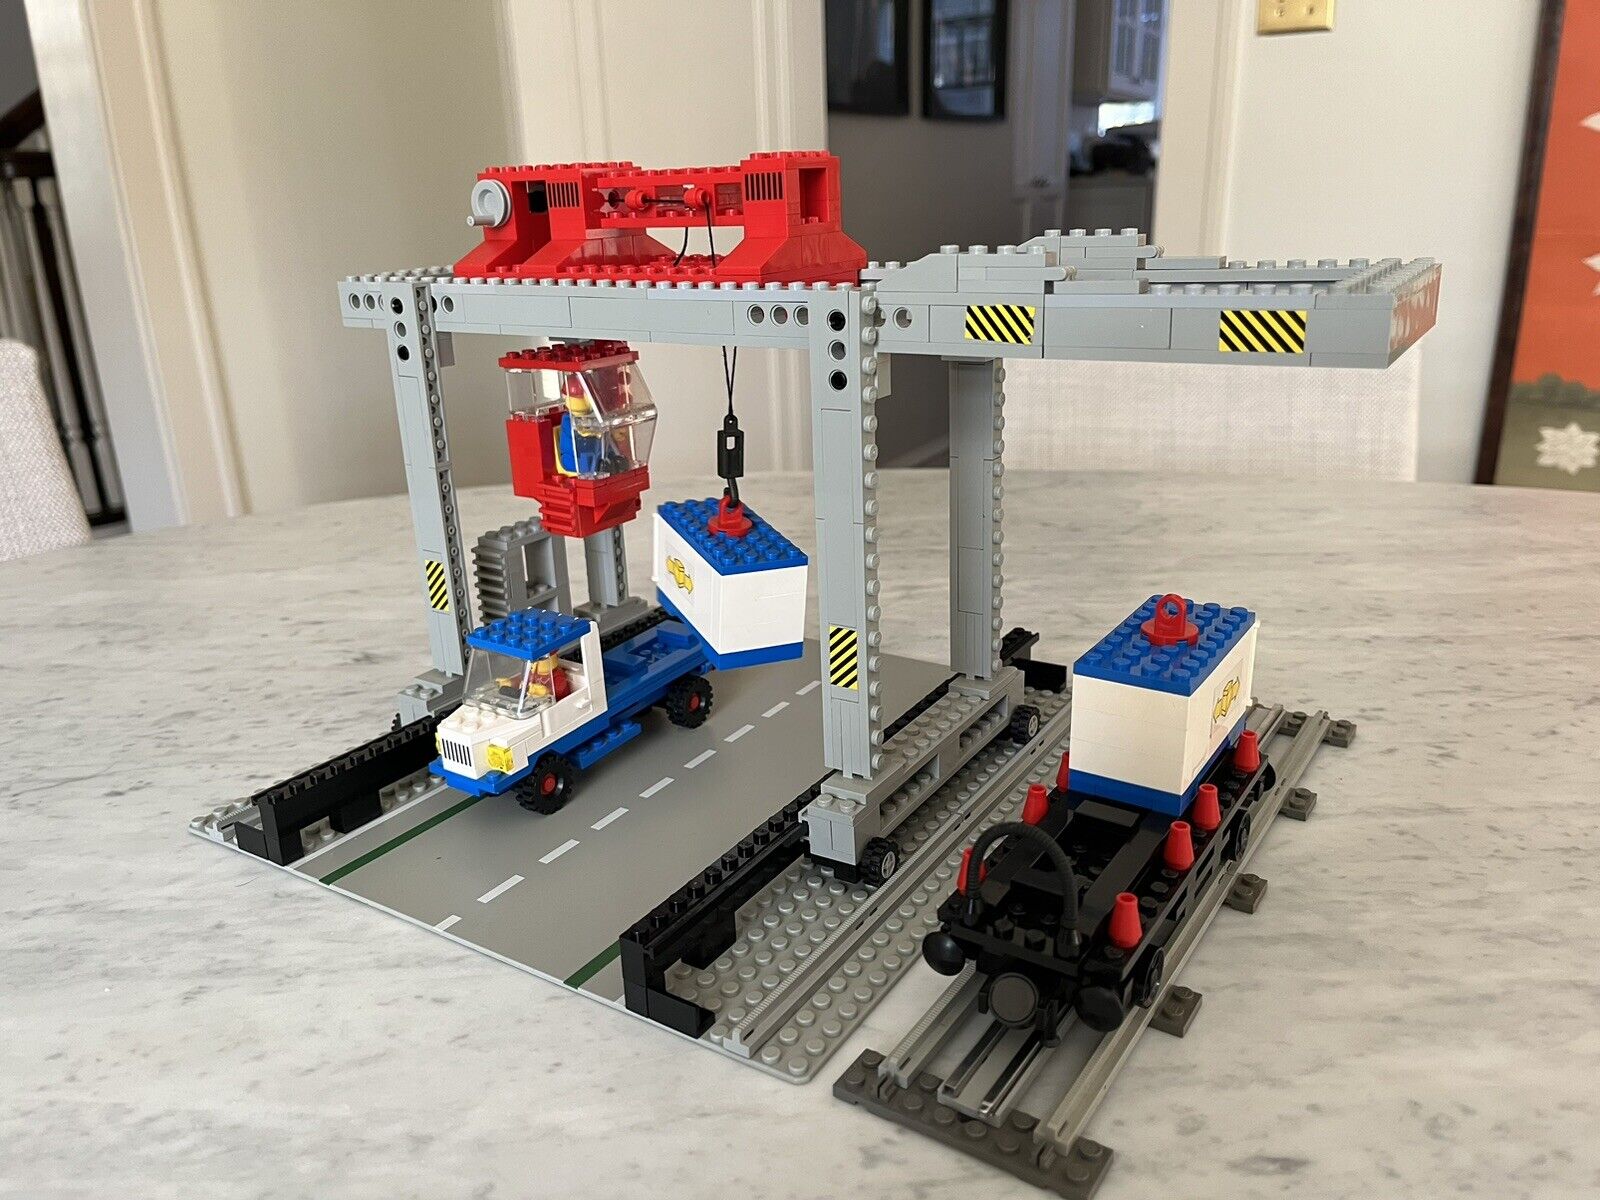 LEGO 7823 Container Crane Depot 9v 12v Train Accessory Set, 100% Complete